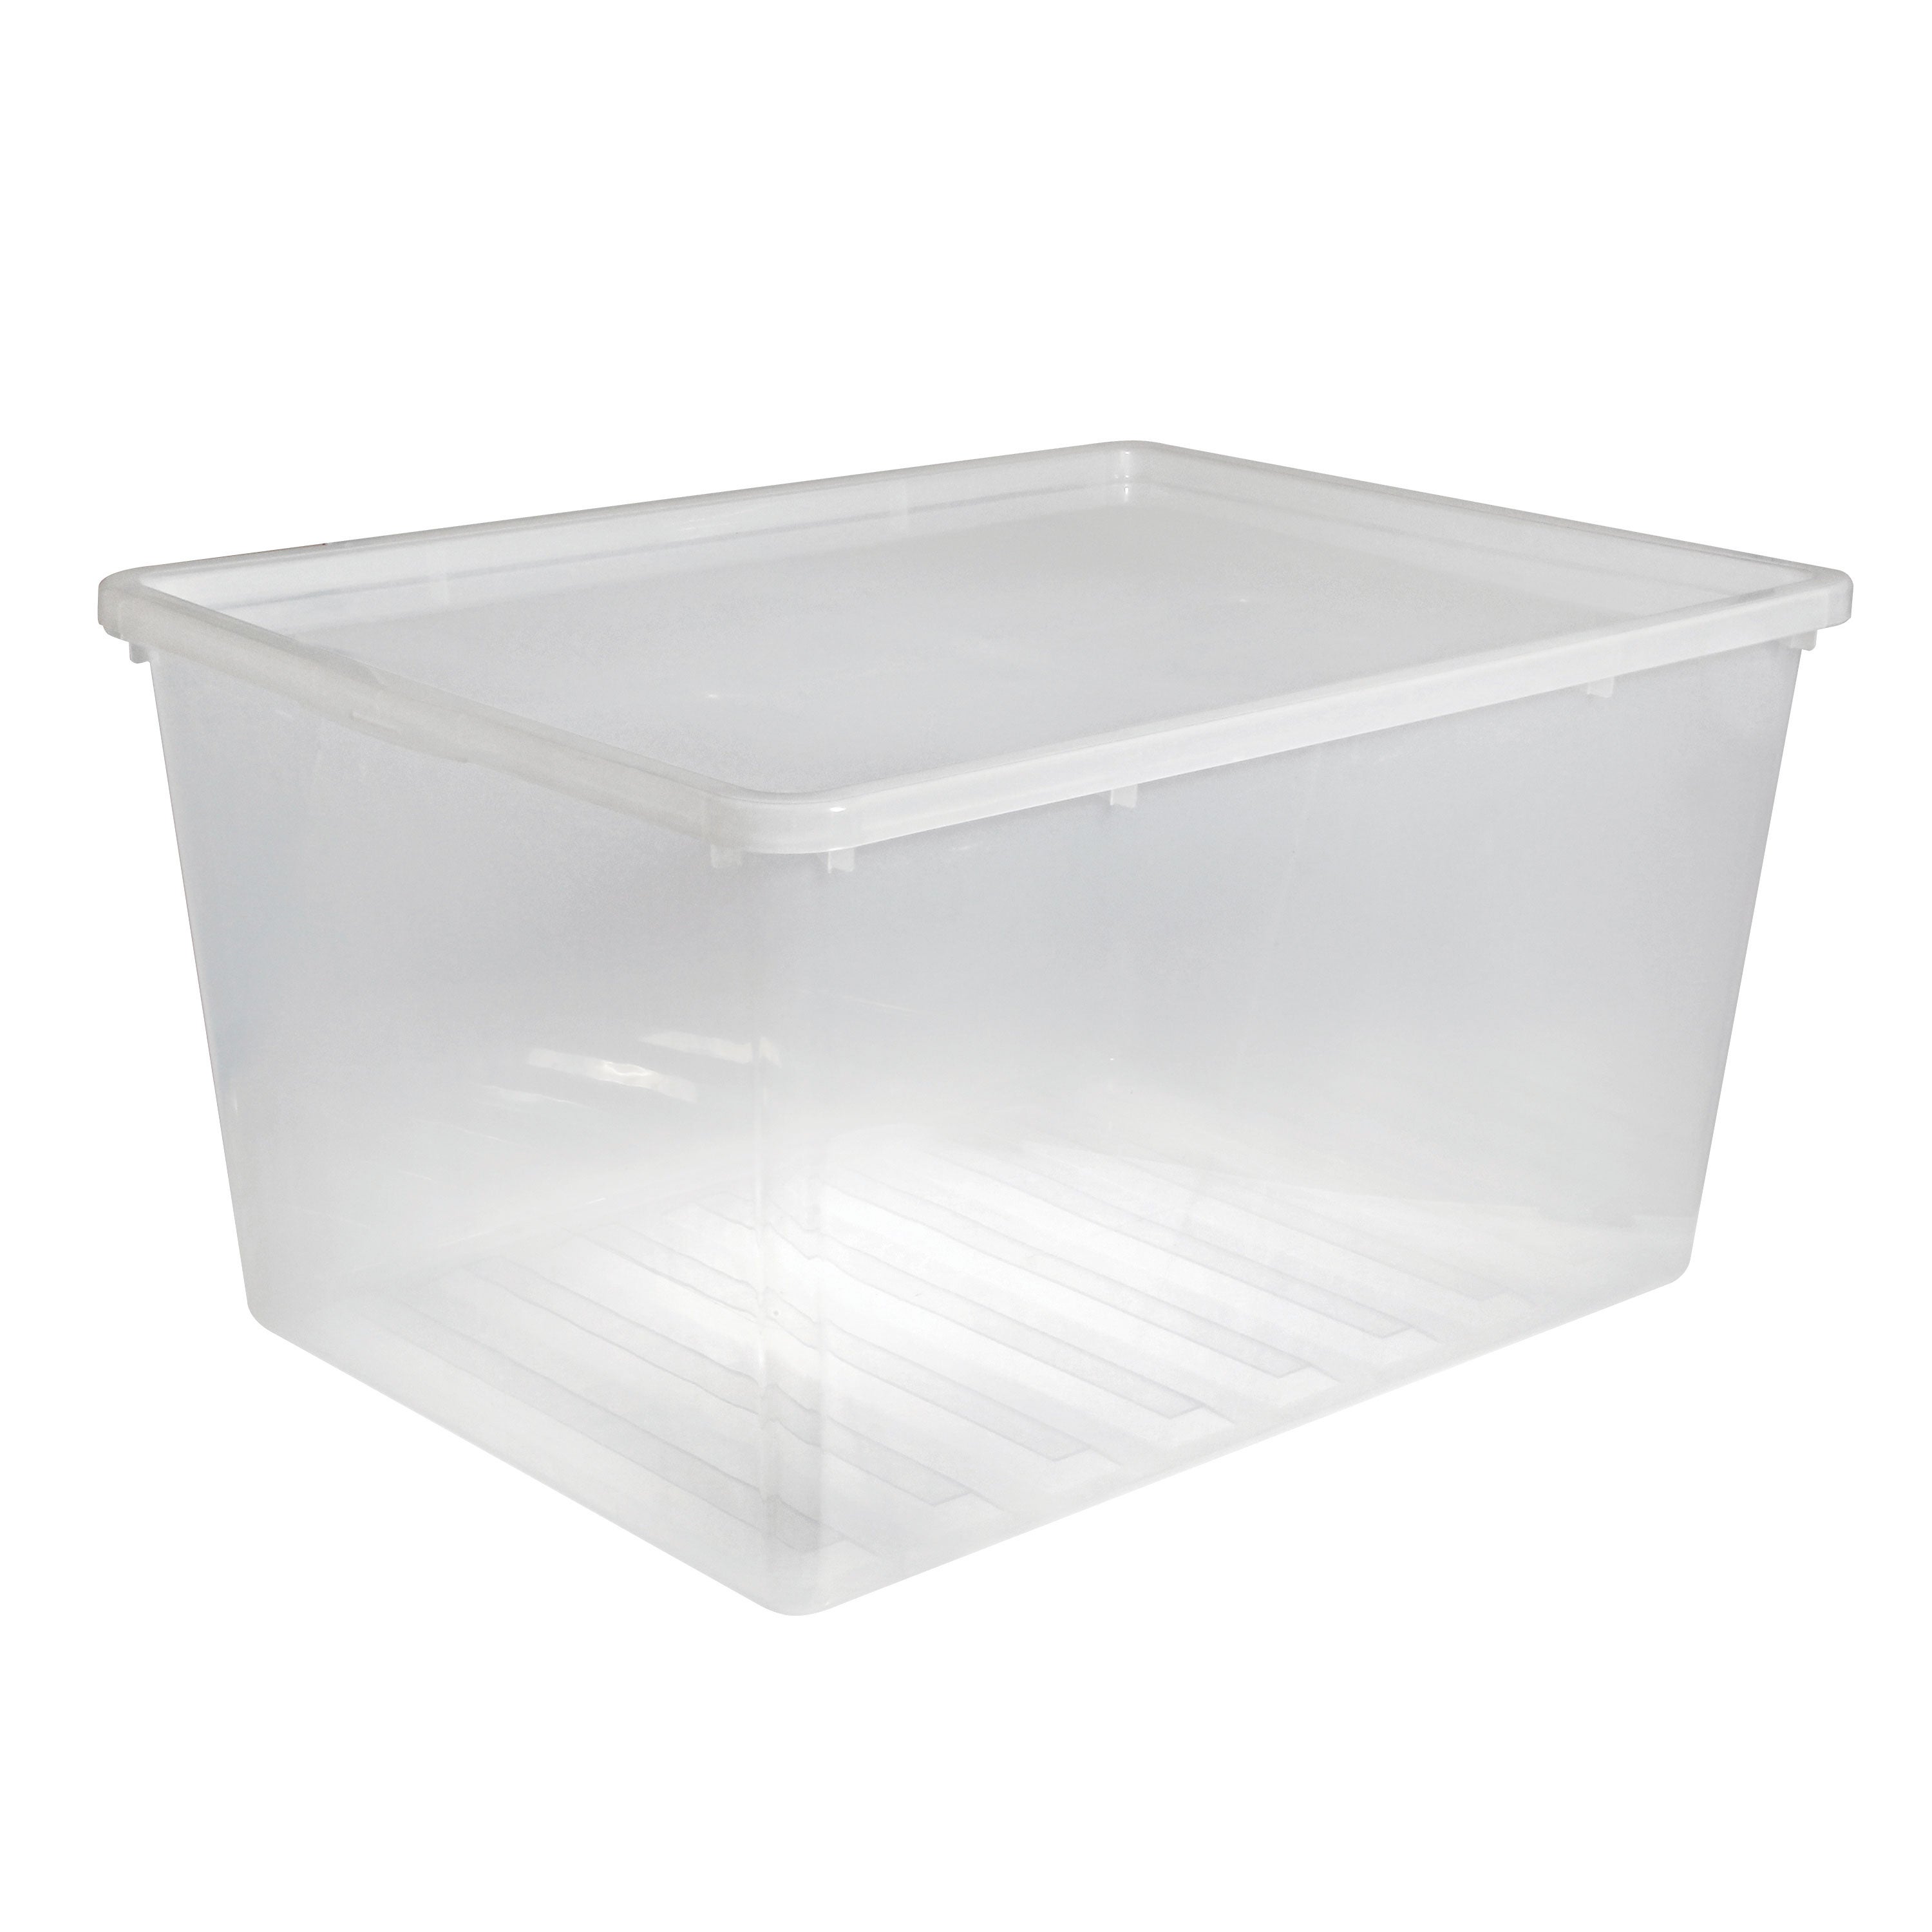 Купить прозрачный контейнер с крышкой. Plast Team контейнеры. Ящикуниверсалтный Кристалл XS Plus 16л 389х275х215мм (бесцветный). Ящик с крышкой 10л ЛМР пласт. Plast Team контейнер 0.6.